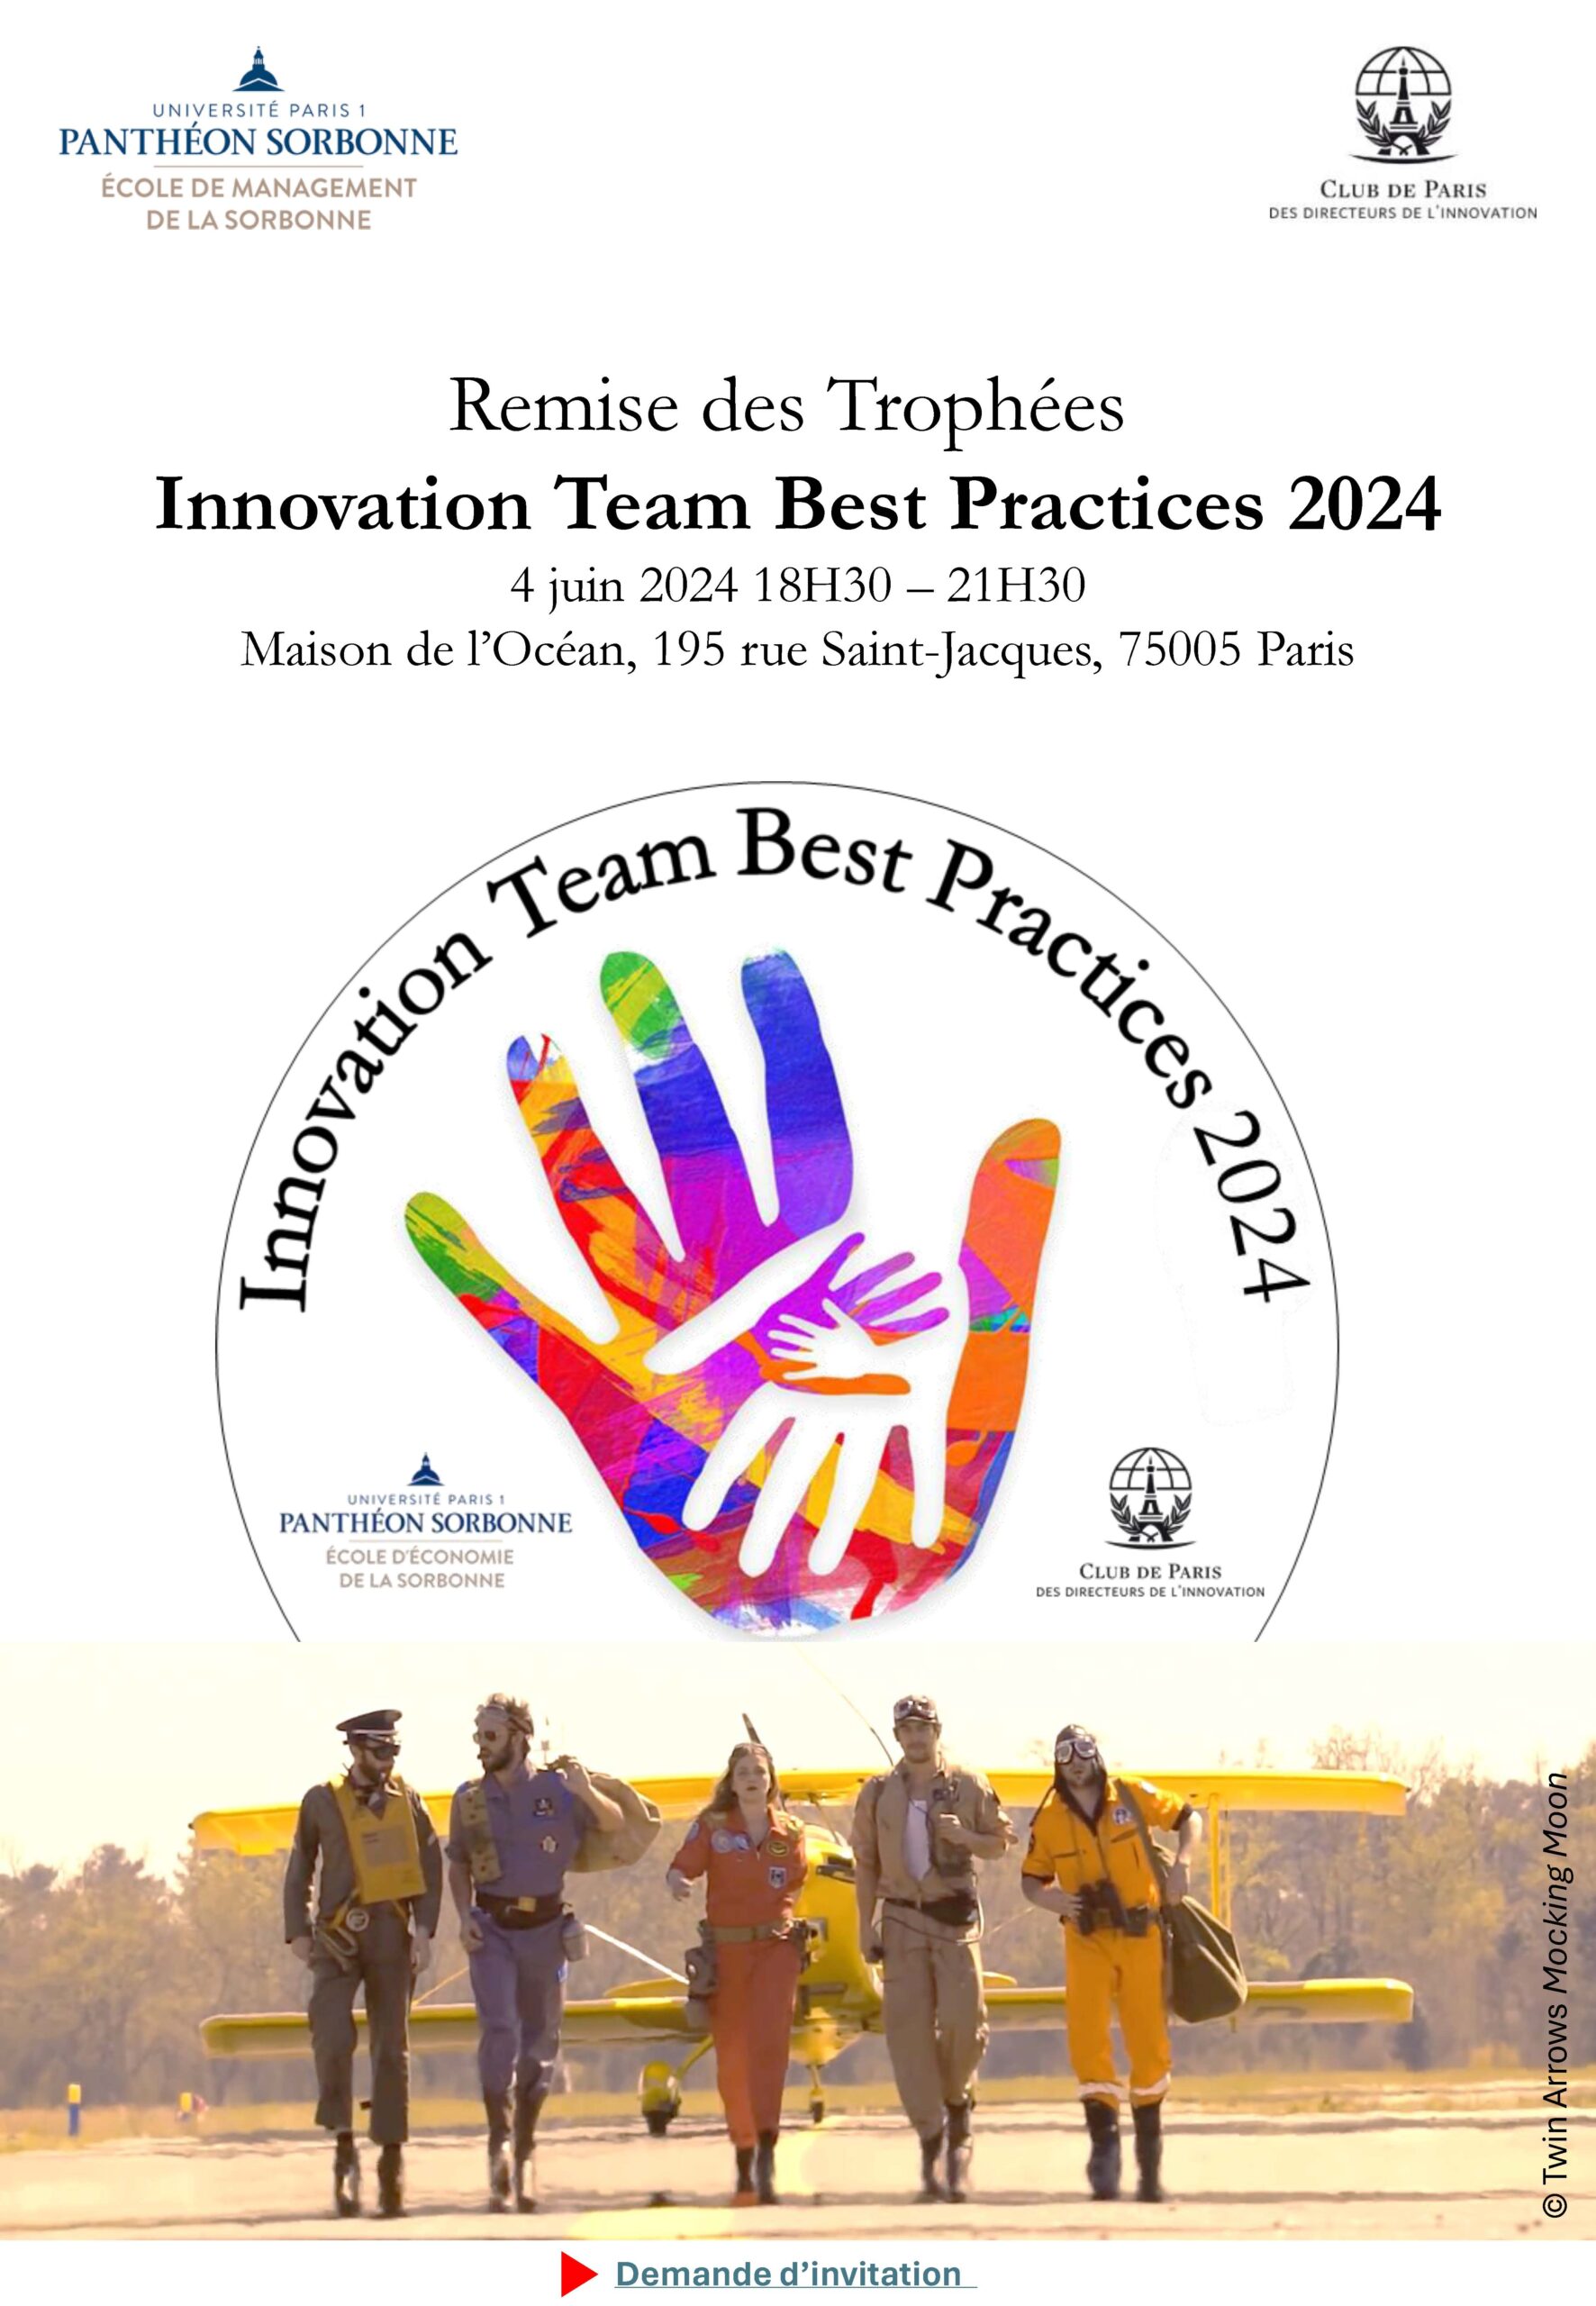 Téléchargez la présentation de la remise trophées Innovation Team Best Practices 2024 en soirée du 4 juin